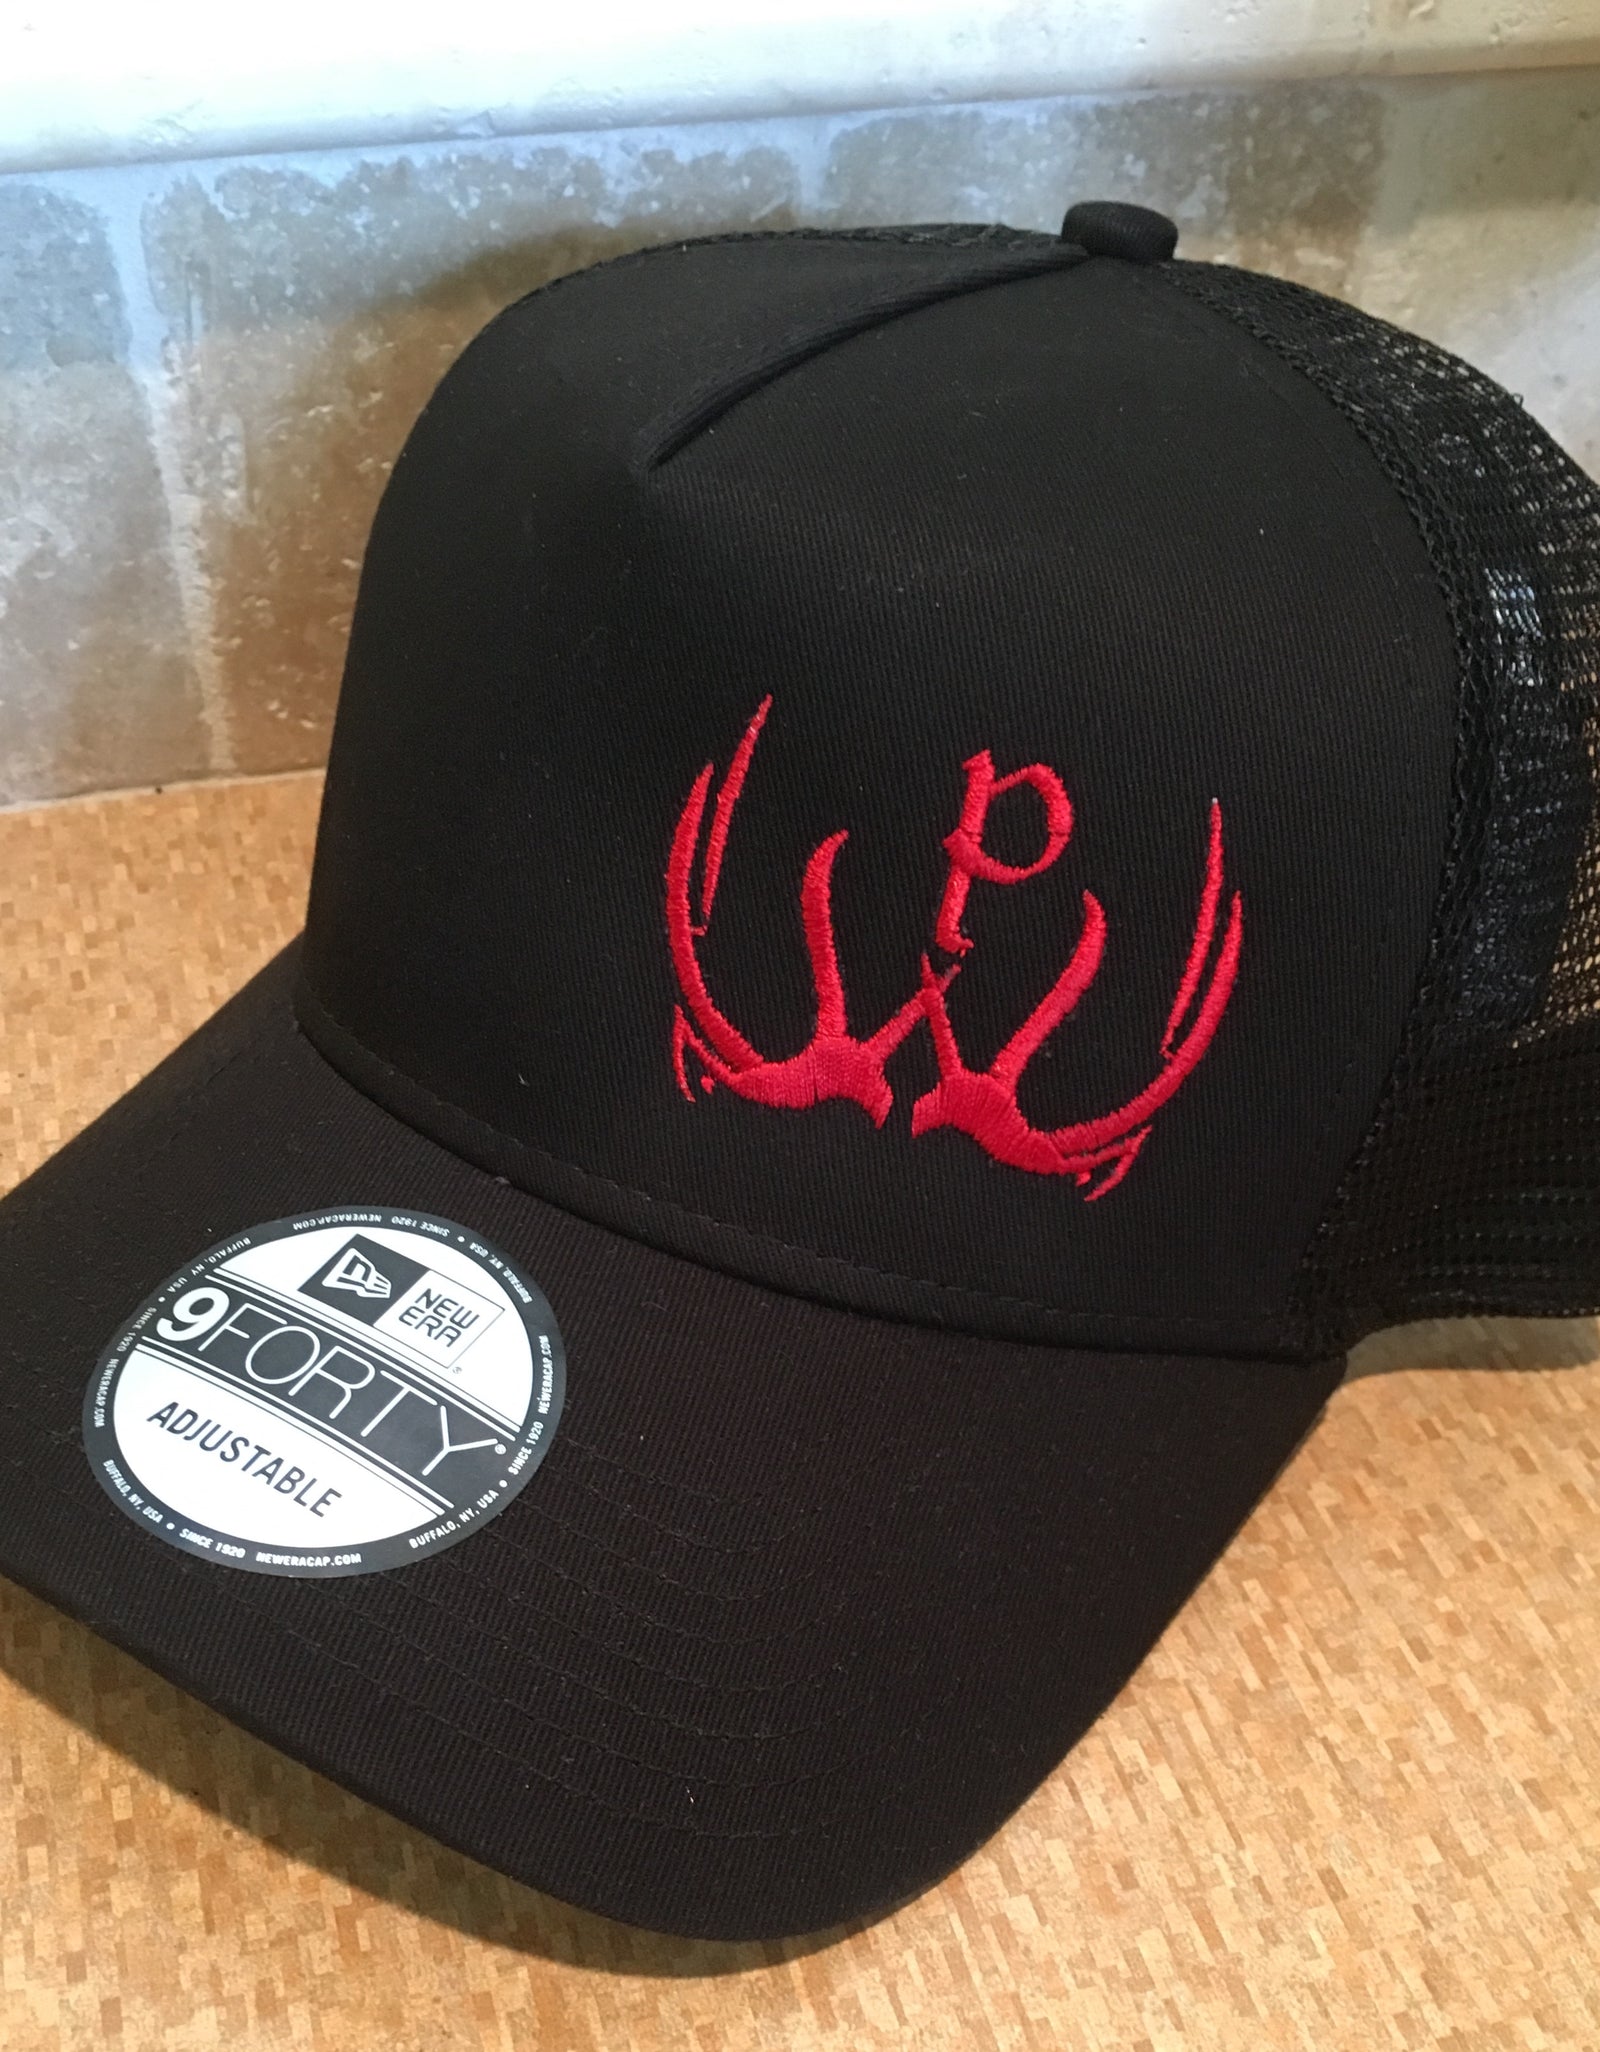 New Era Pursue The Wild Logo Hat - Black/Black & Red